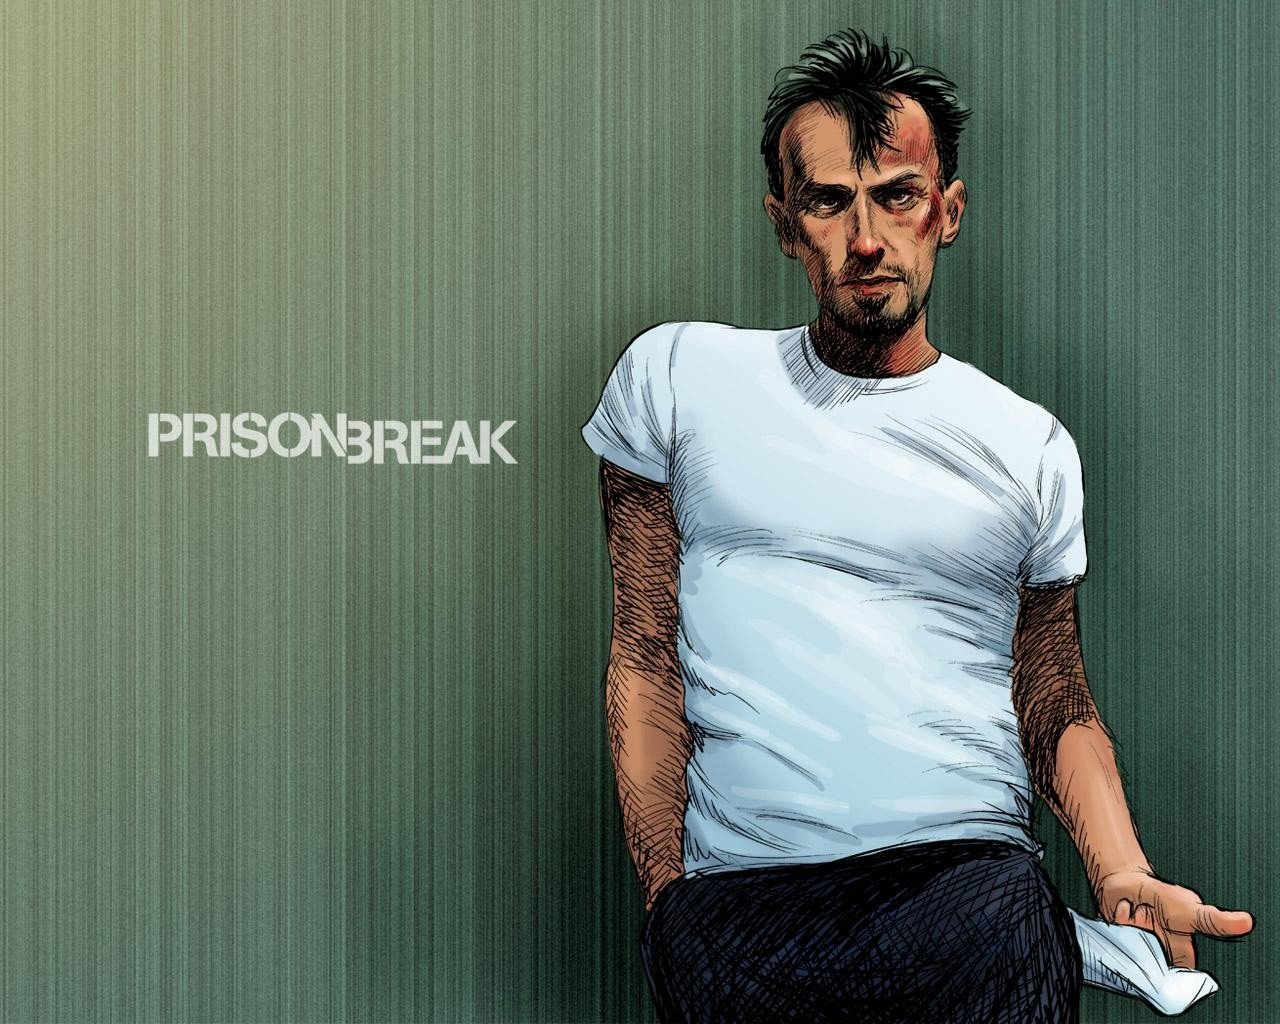 Prison Break, Theodore bagwell, T bag, T bag Wallpaper